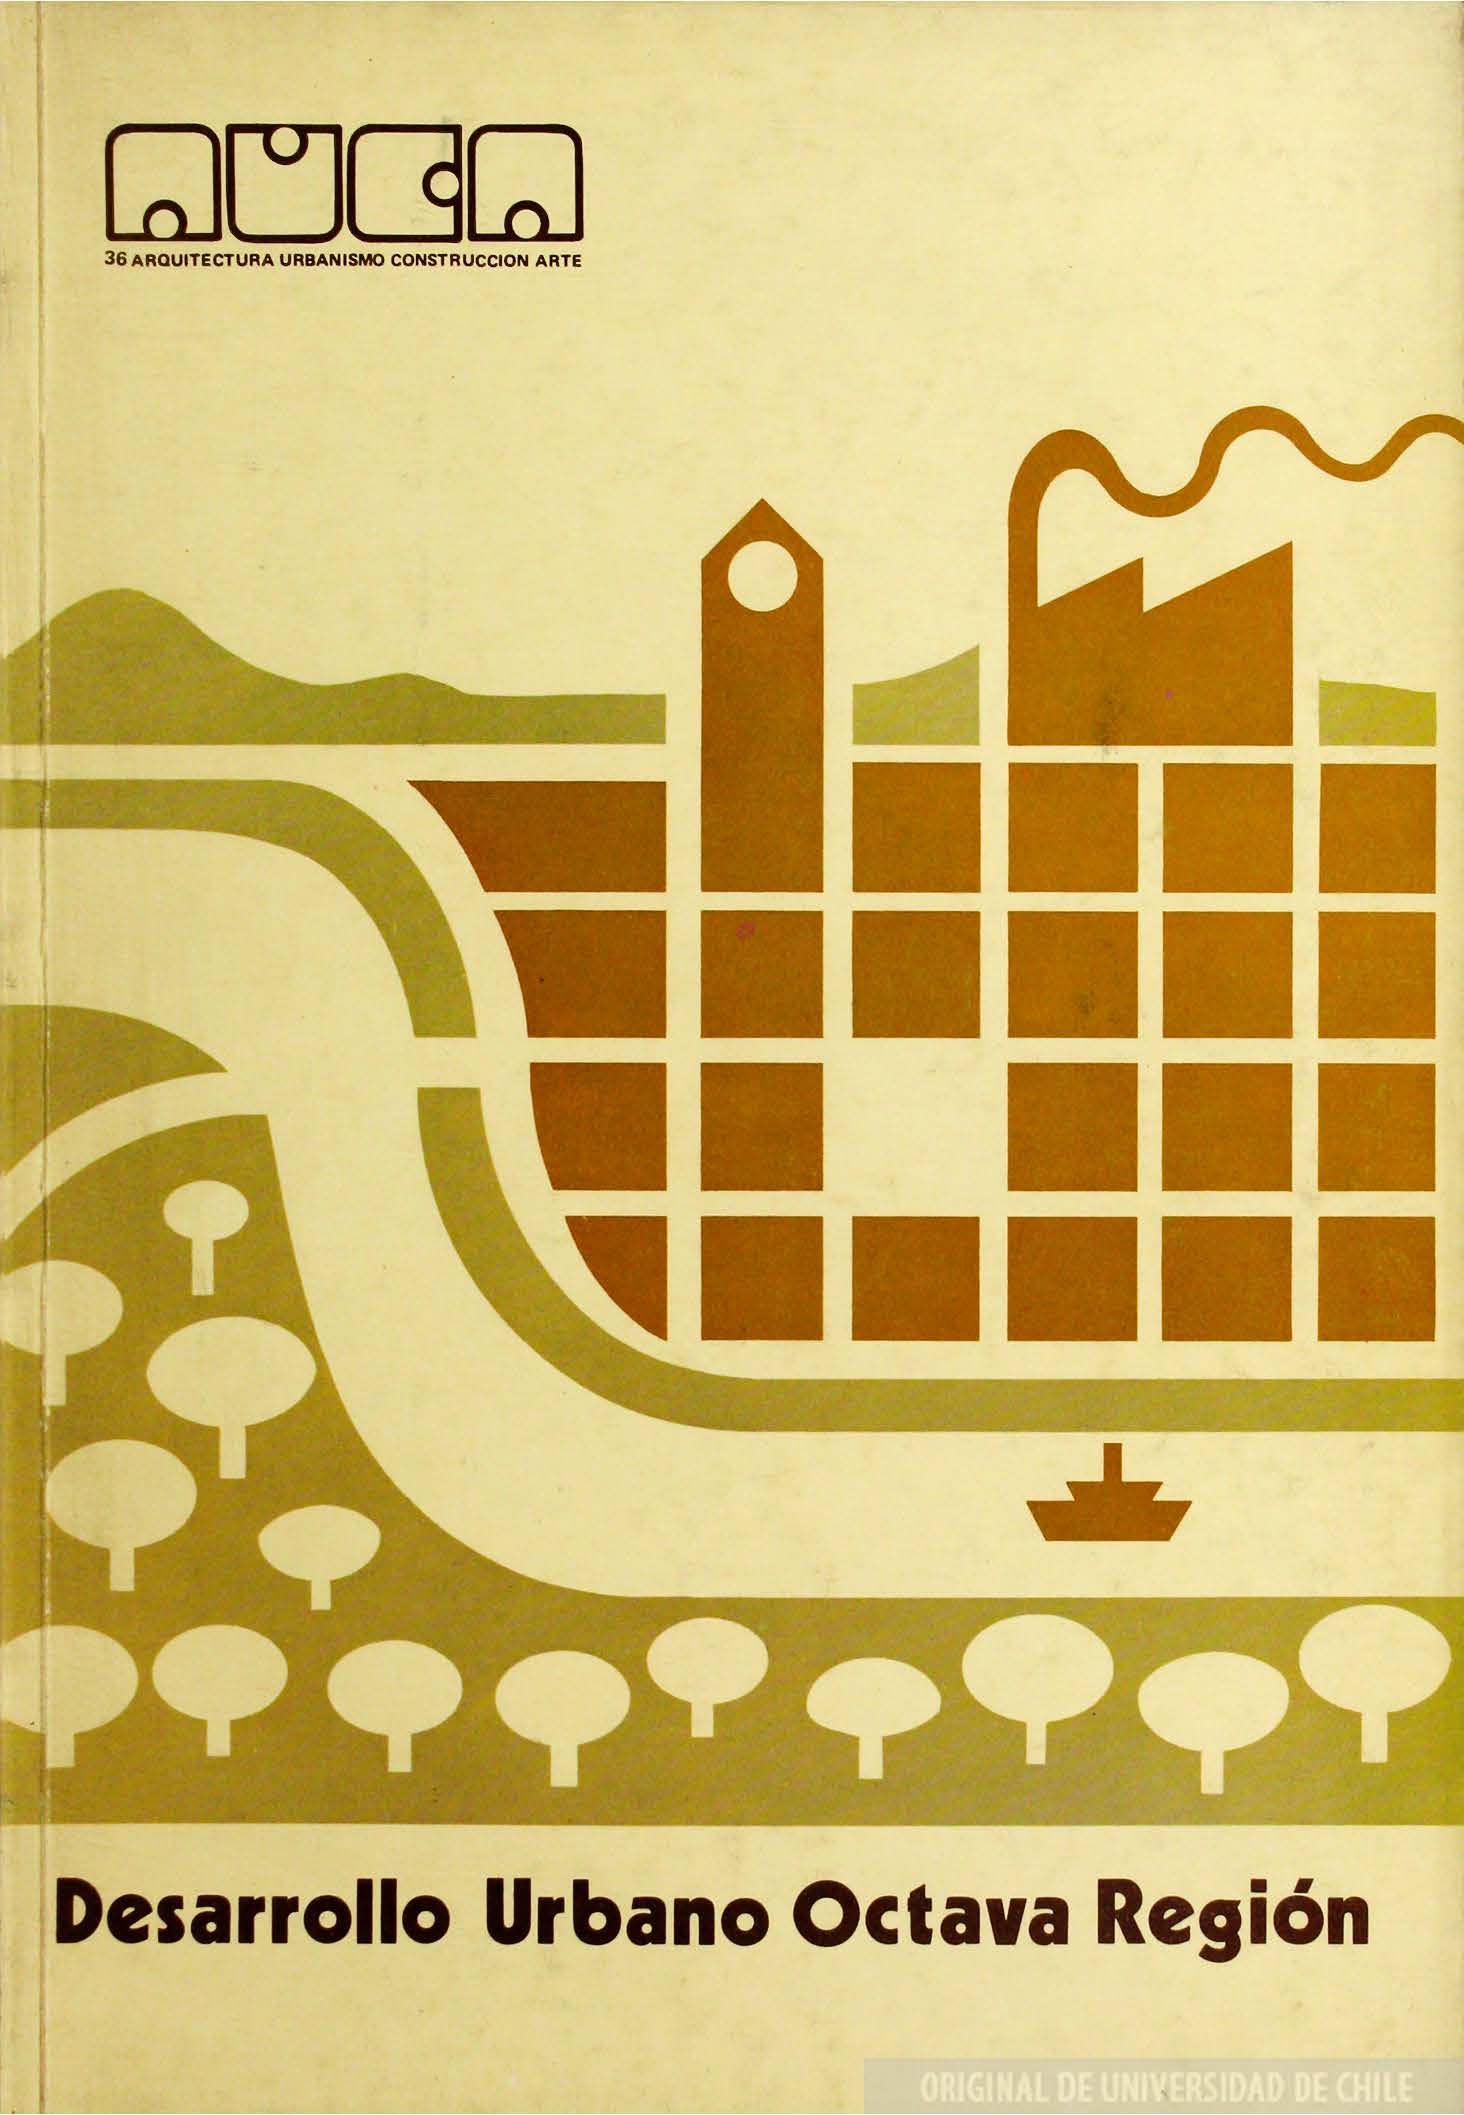 												Ver Núm. 36 (1979): Desarrollo Urbano Octavo Región
											